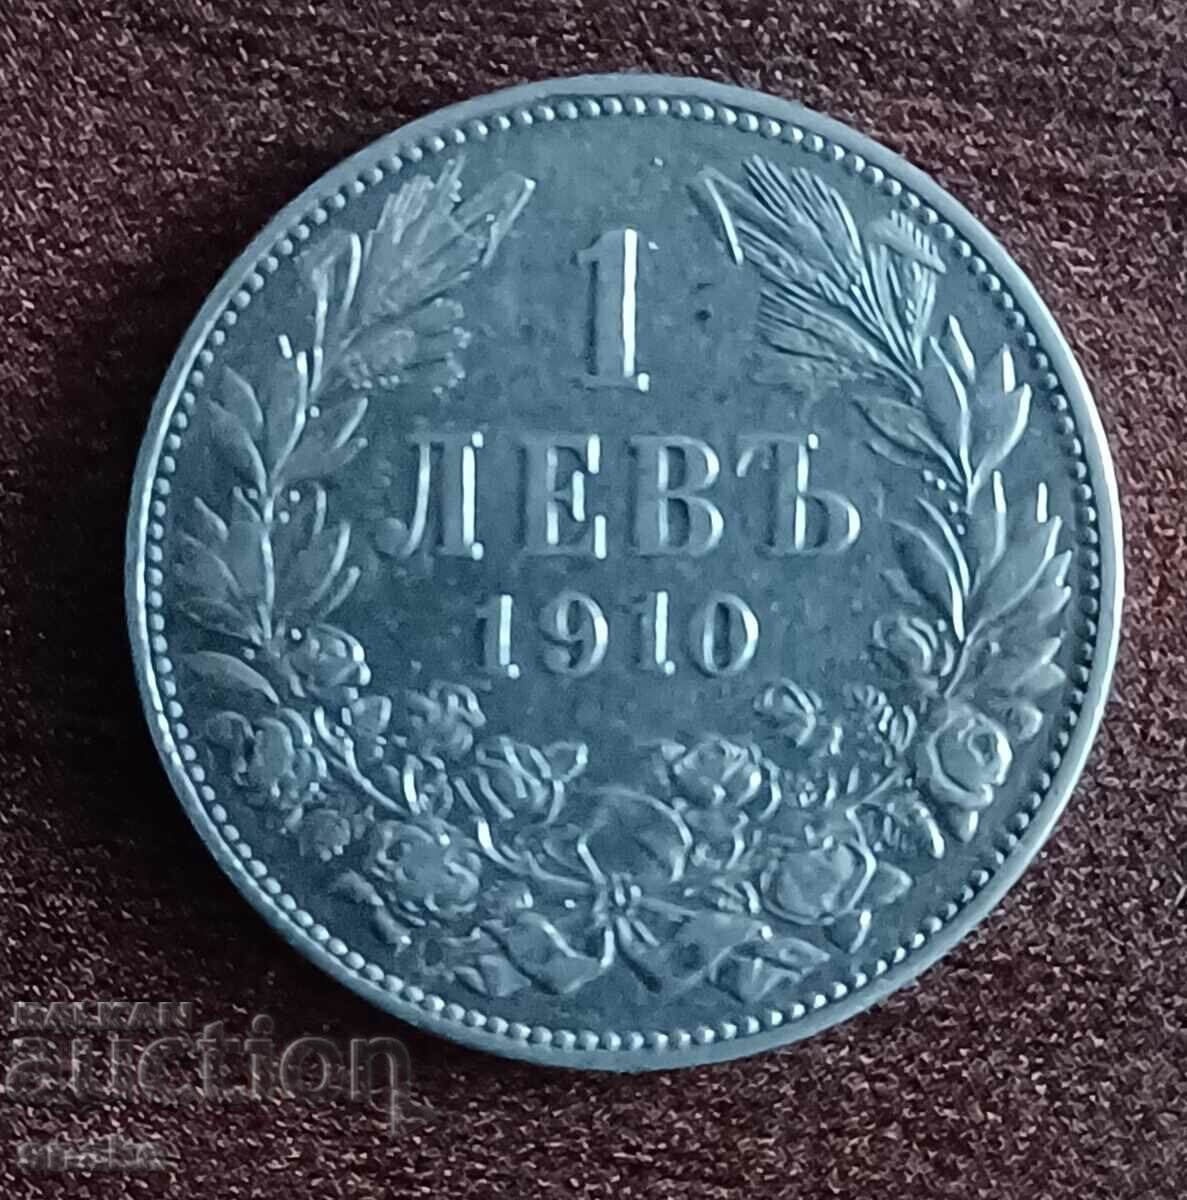 Bulgaria BGN 1 1910 Argint